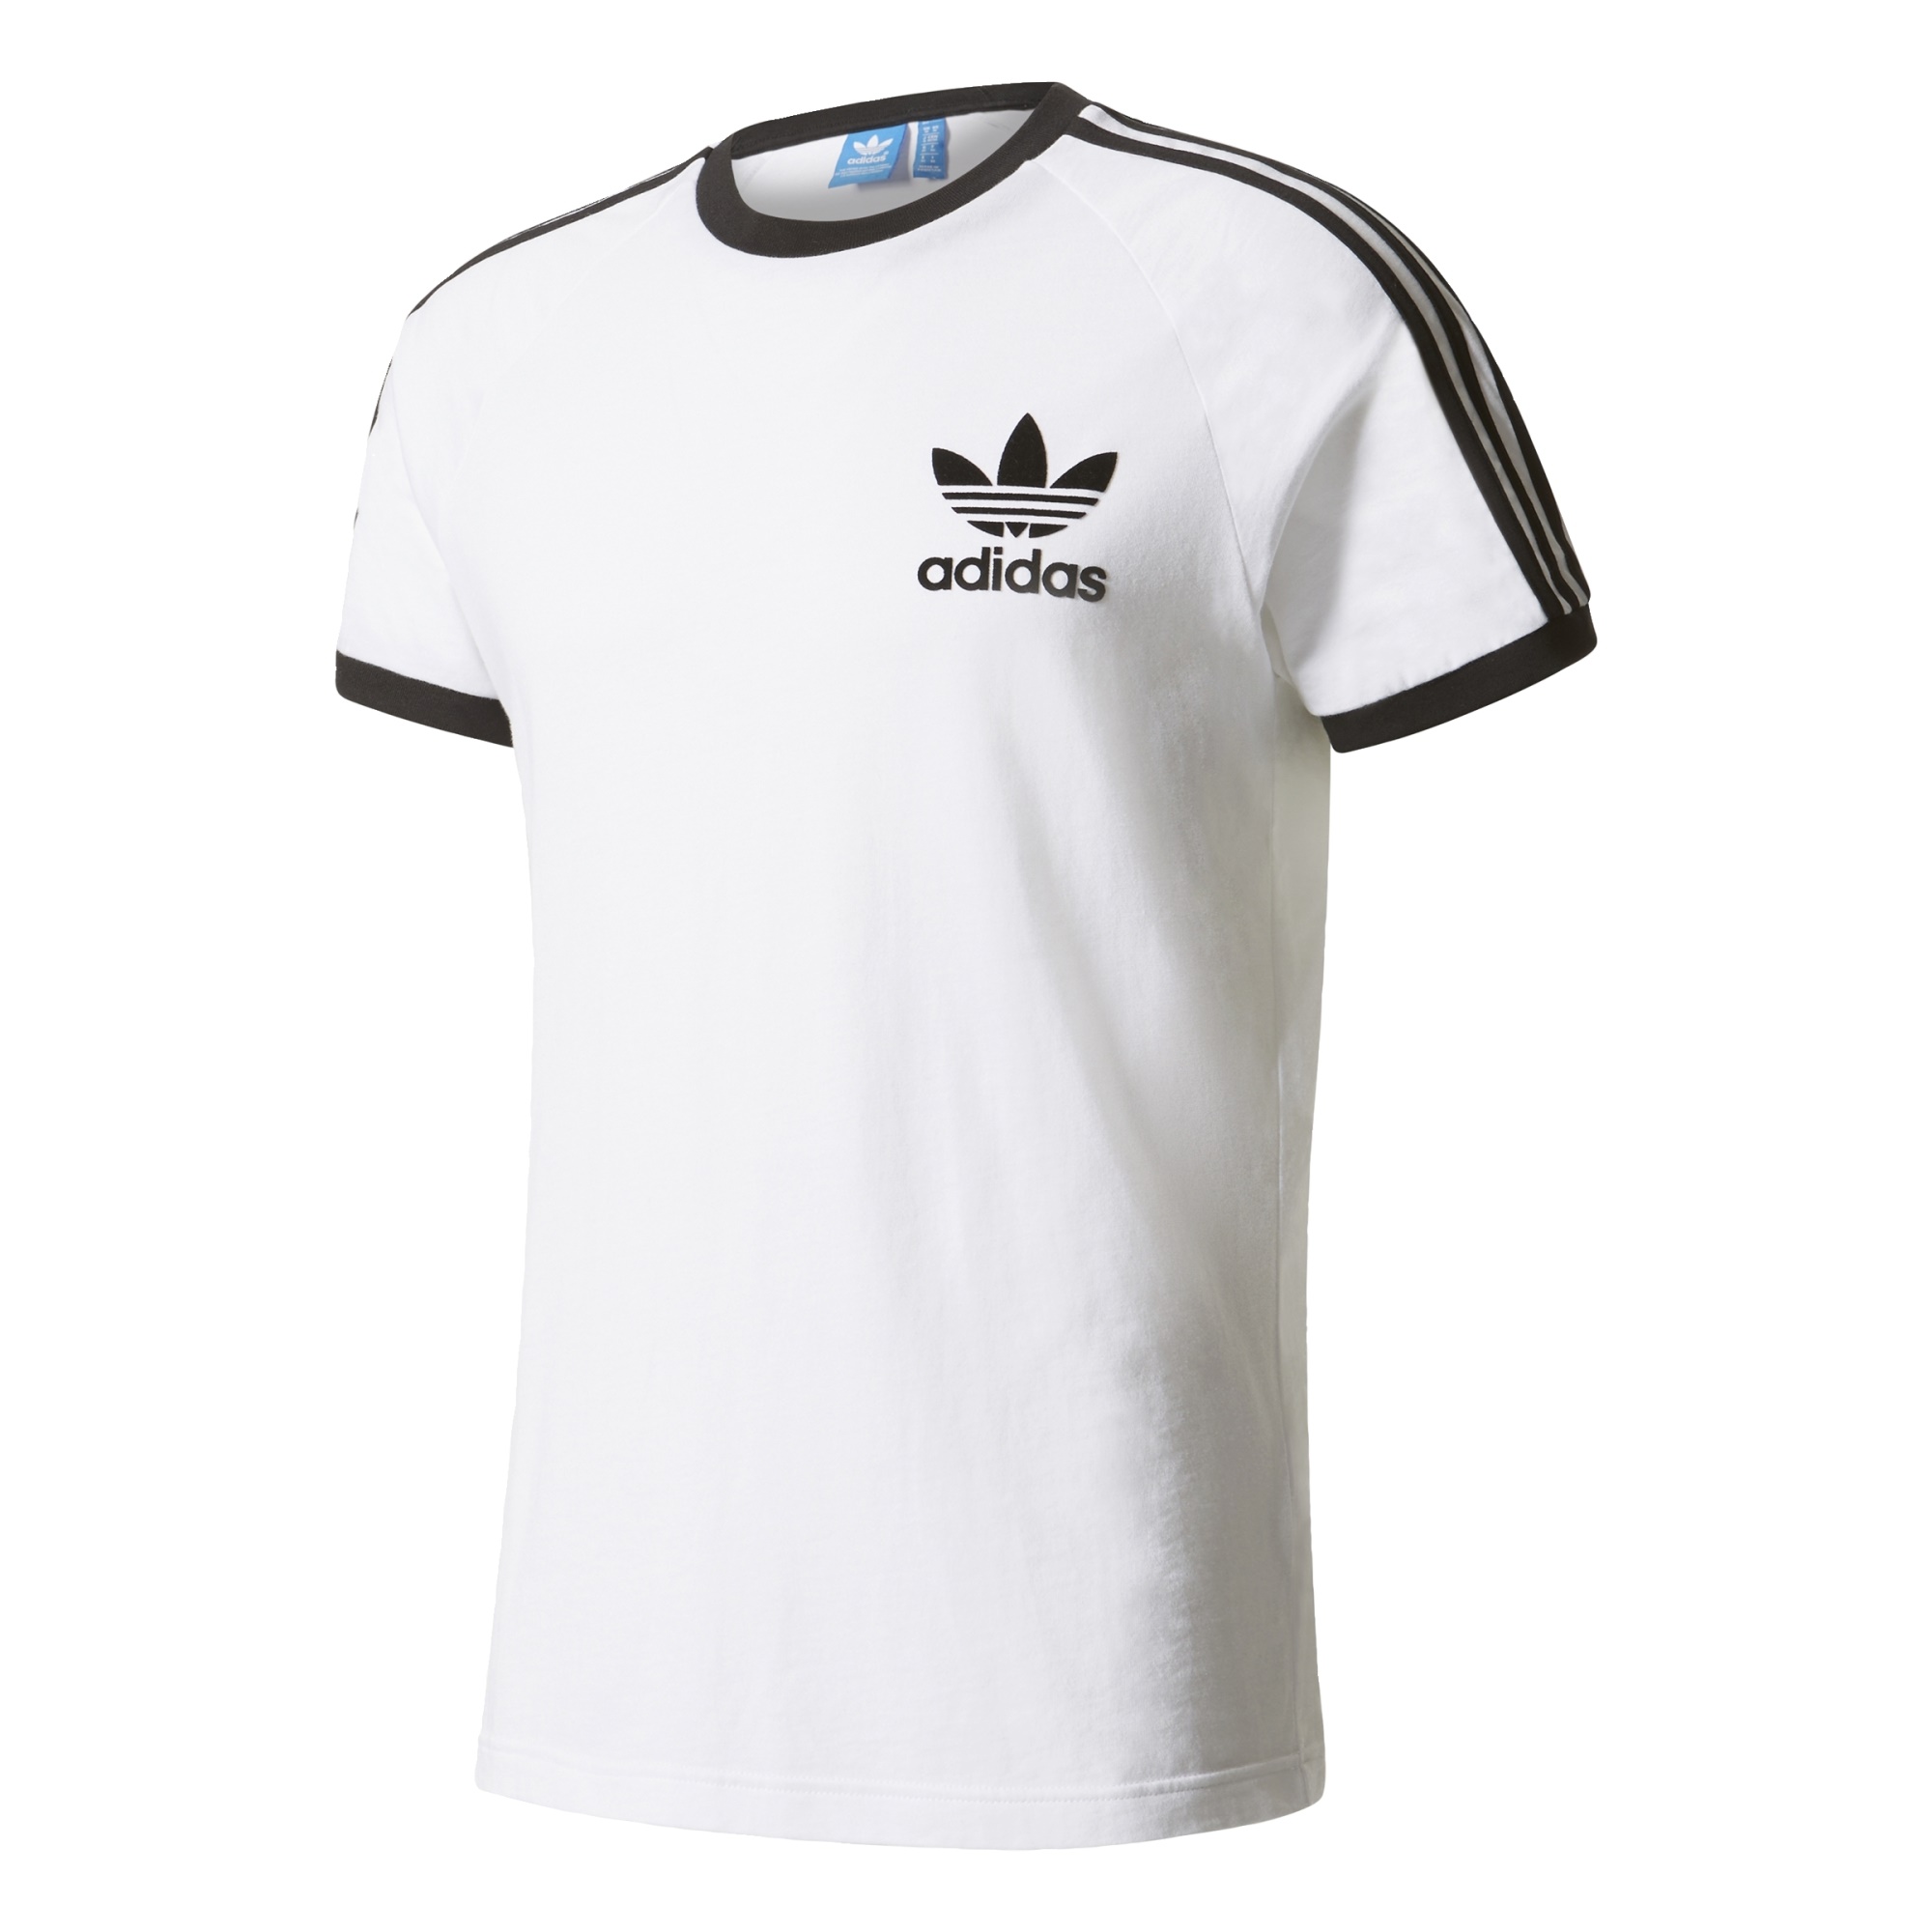 Fácil de leer suelo Lo encontré Adidas Originals Camiseta CLFN Logo (blanco/negro)